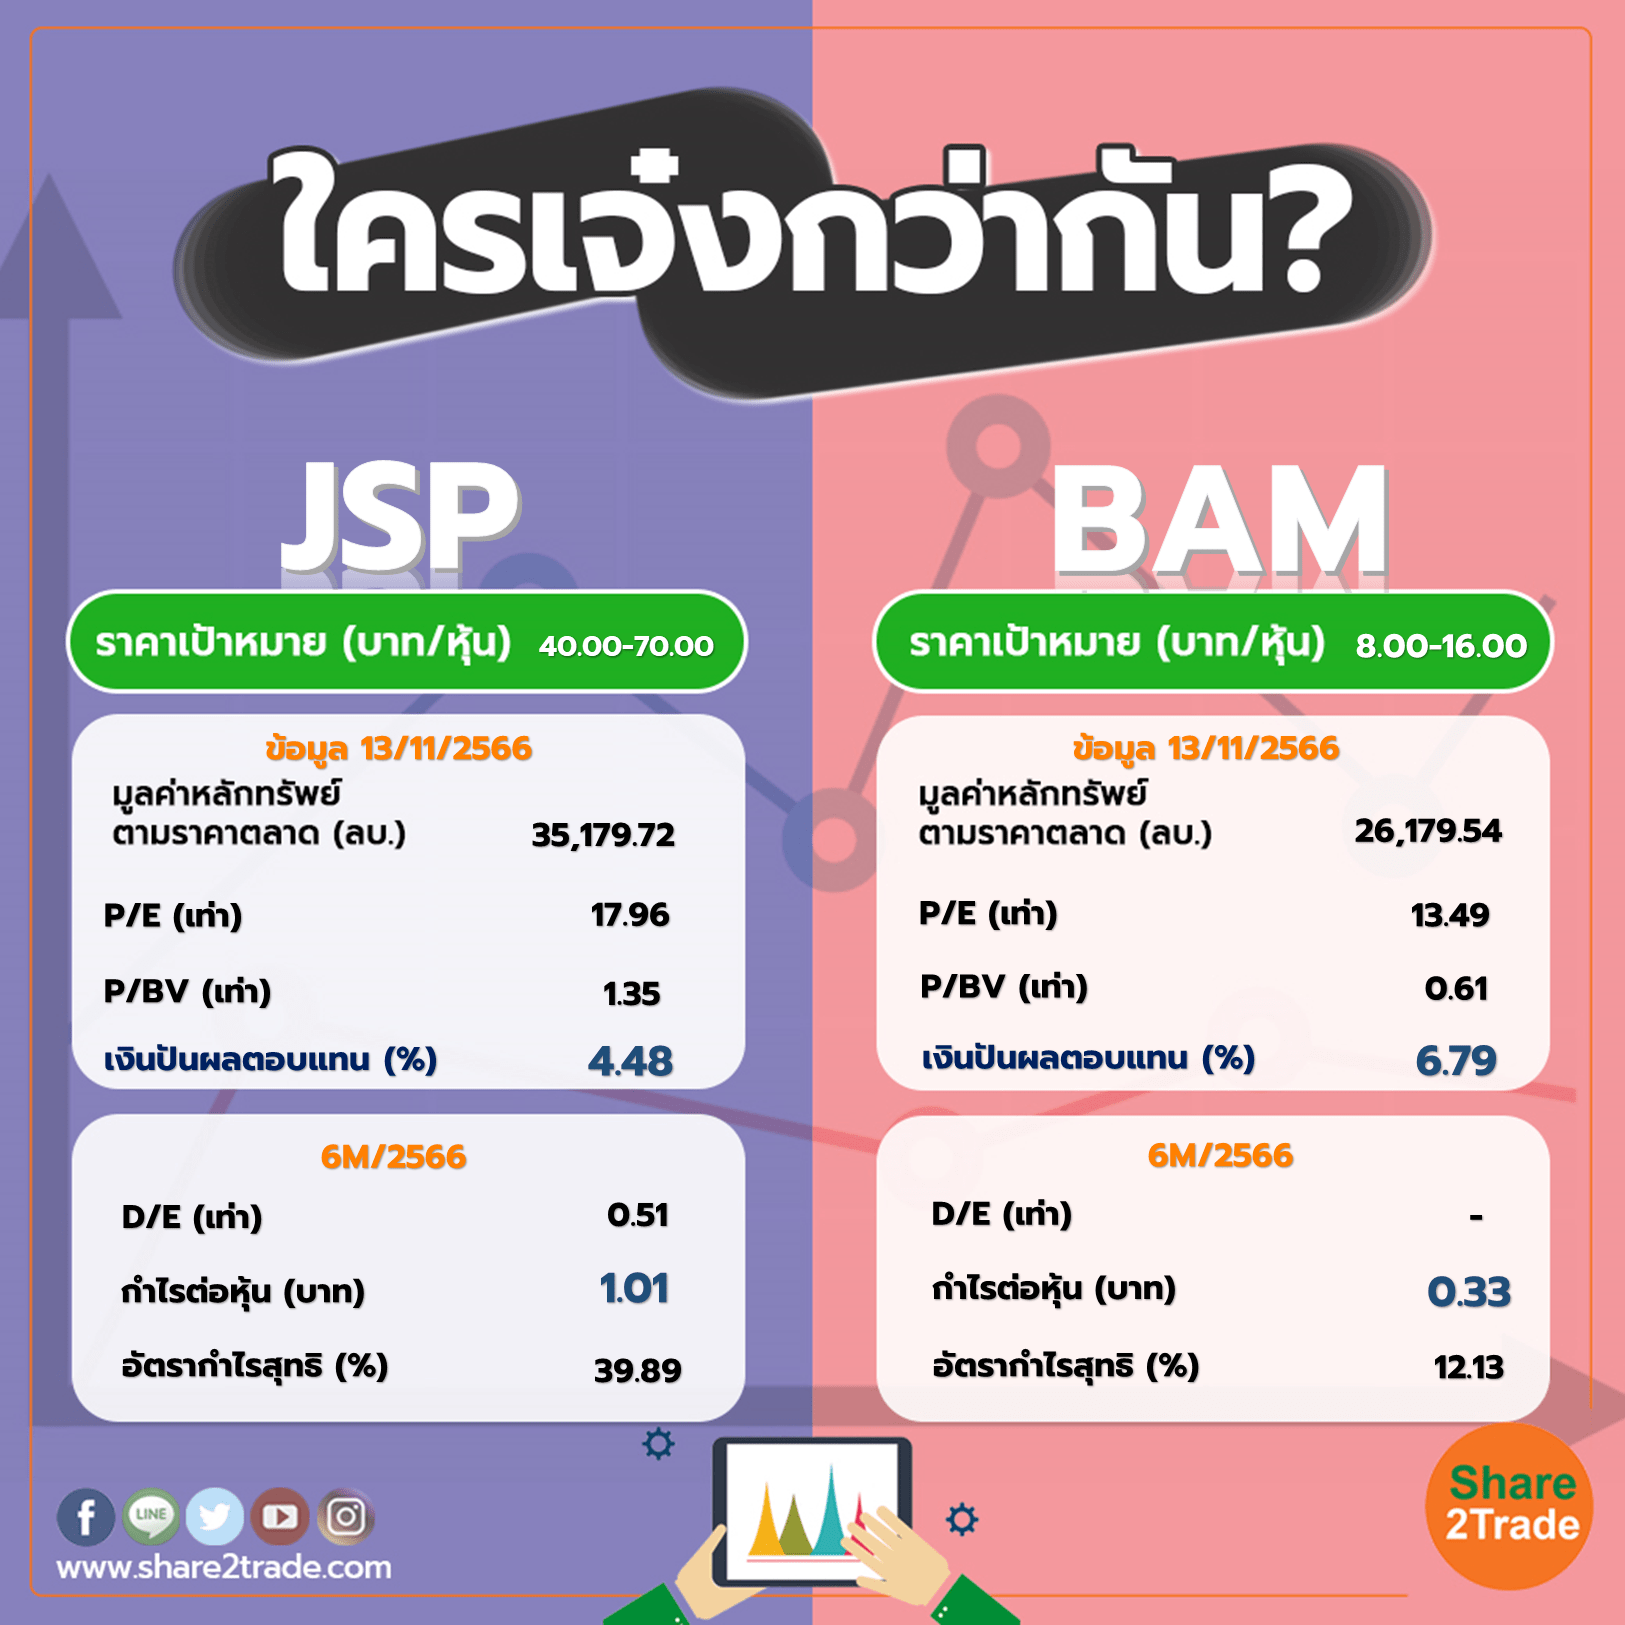 ใครเจ๋งกว่ากัน "JSP" VS "BAM"